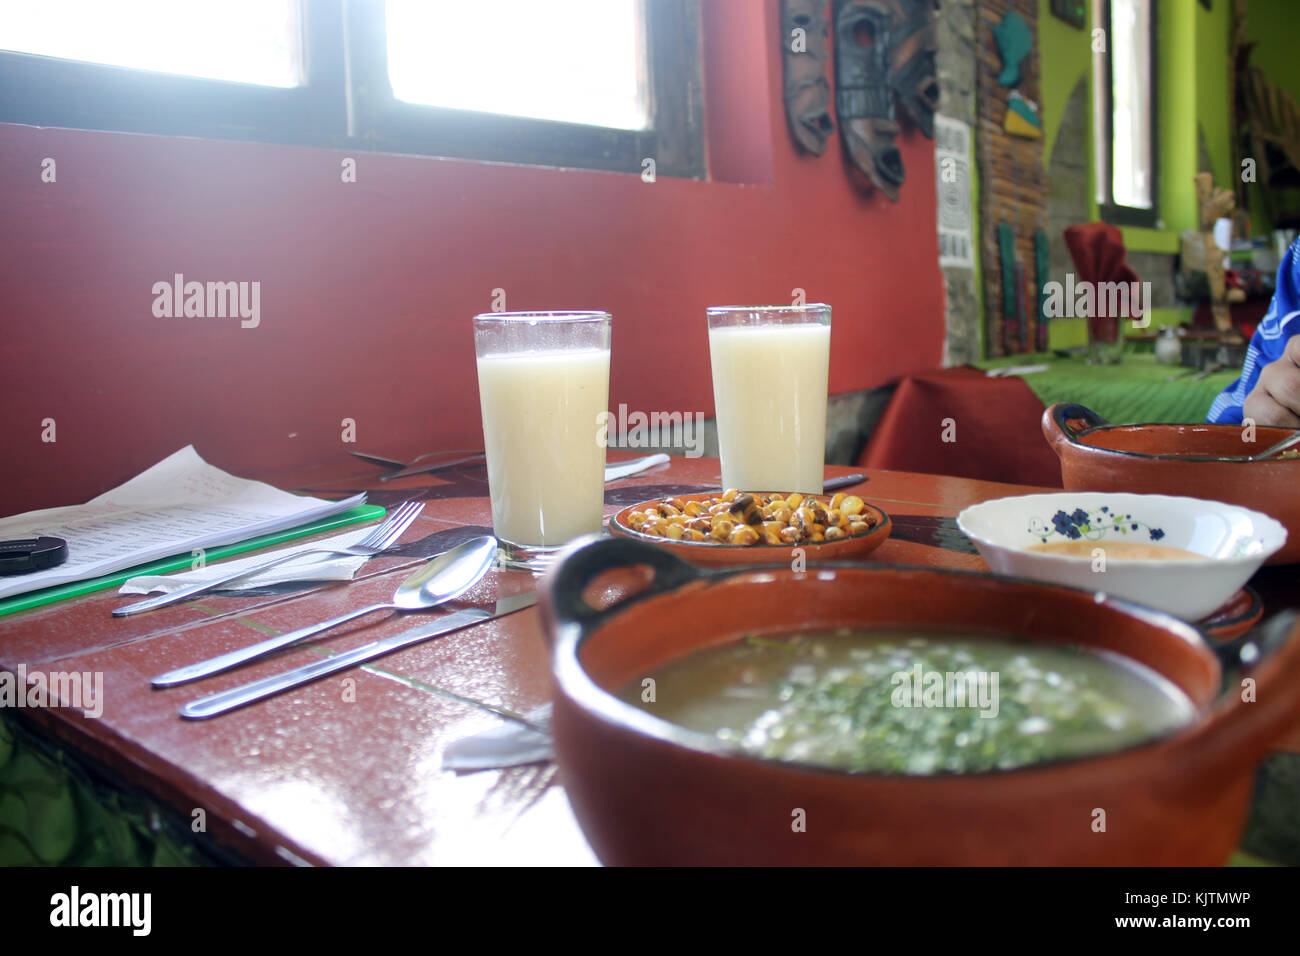 Fotografía de un plato típico de Carpuela-Ecuador, se visualiza la comida servida en un cuenco de cerámica, artesanía representativa del sector. Photo Stock Photo